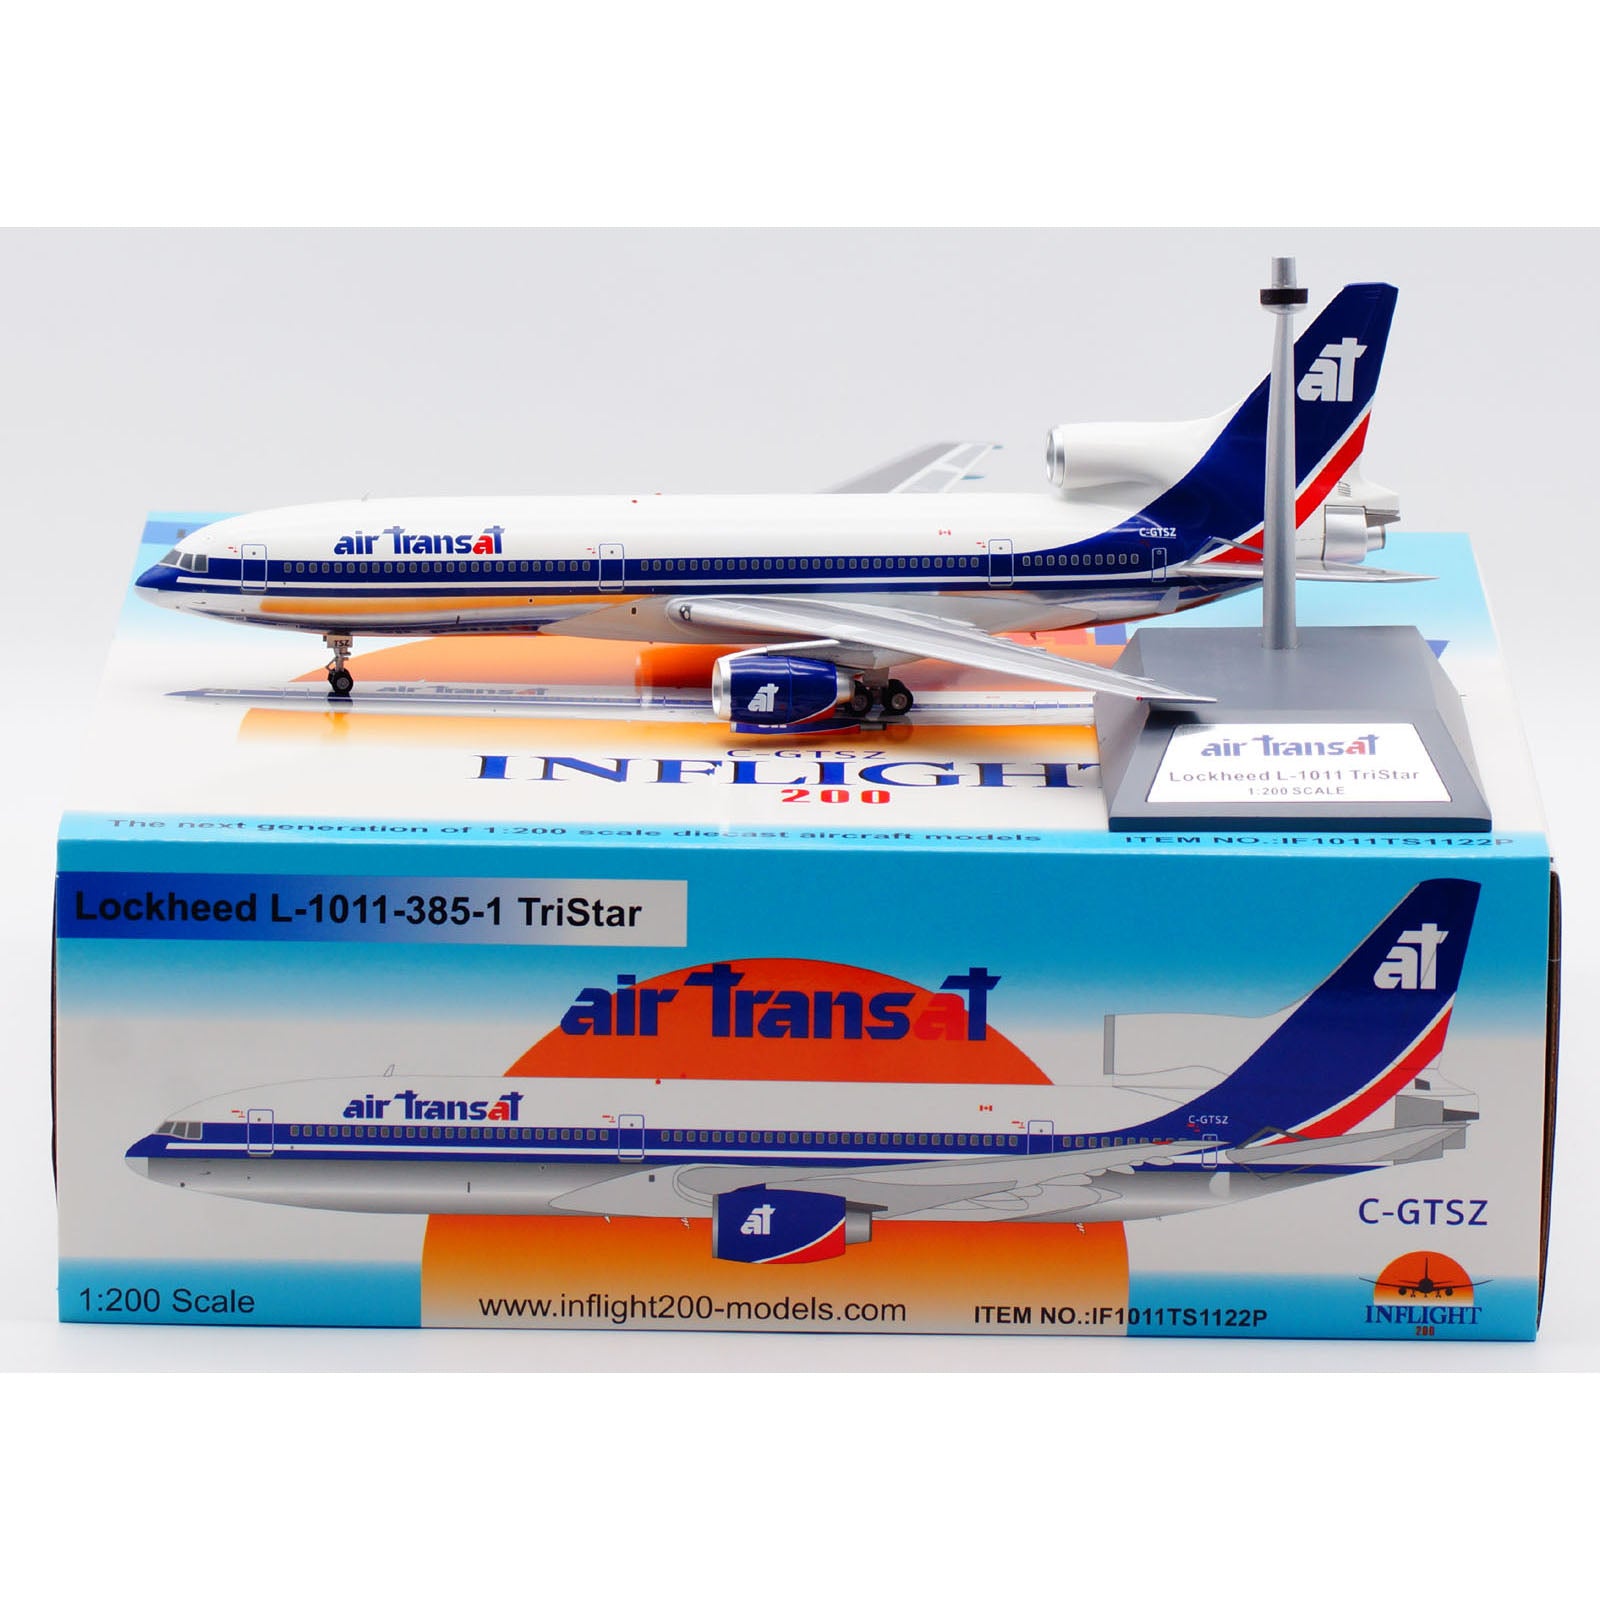 Air Transat / L-1011-385-1 TriStar 50 / C-GTSZ / IF1011TS1122P / 1:200